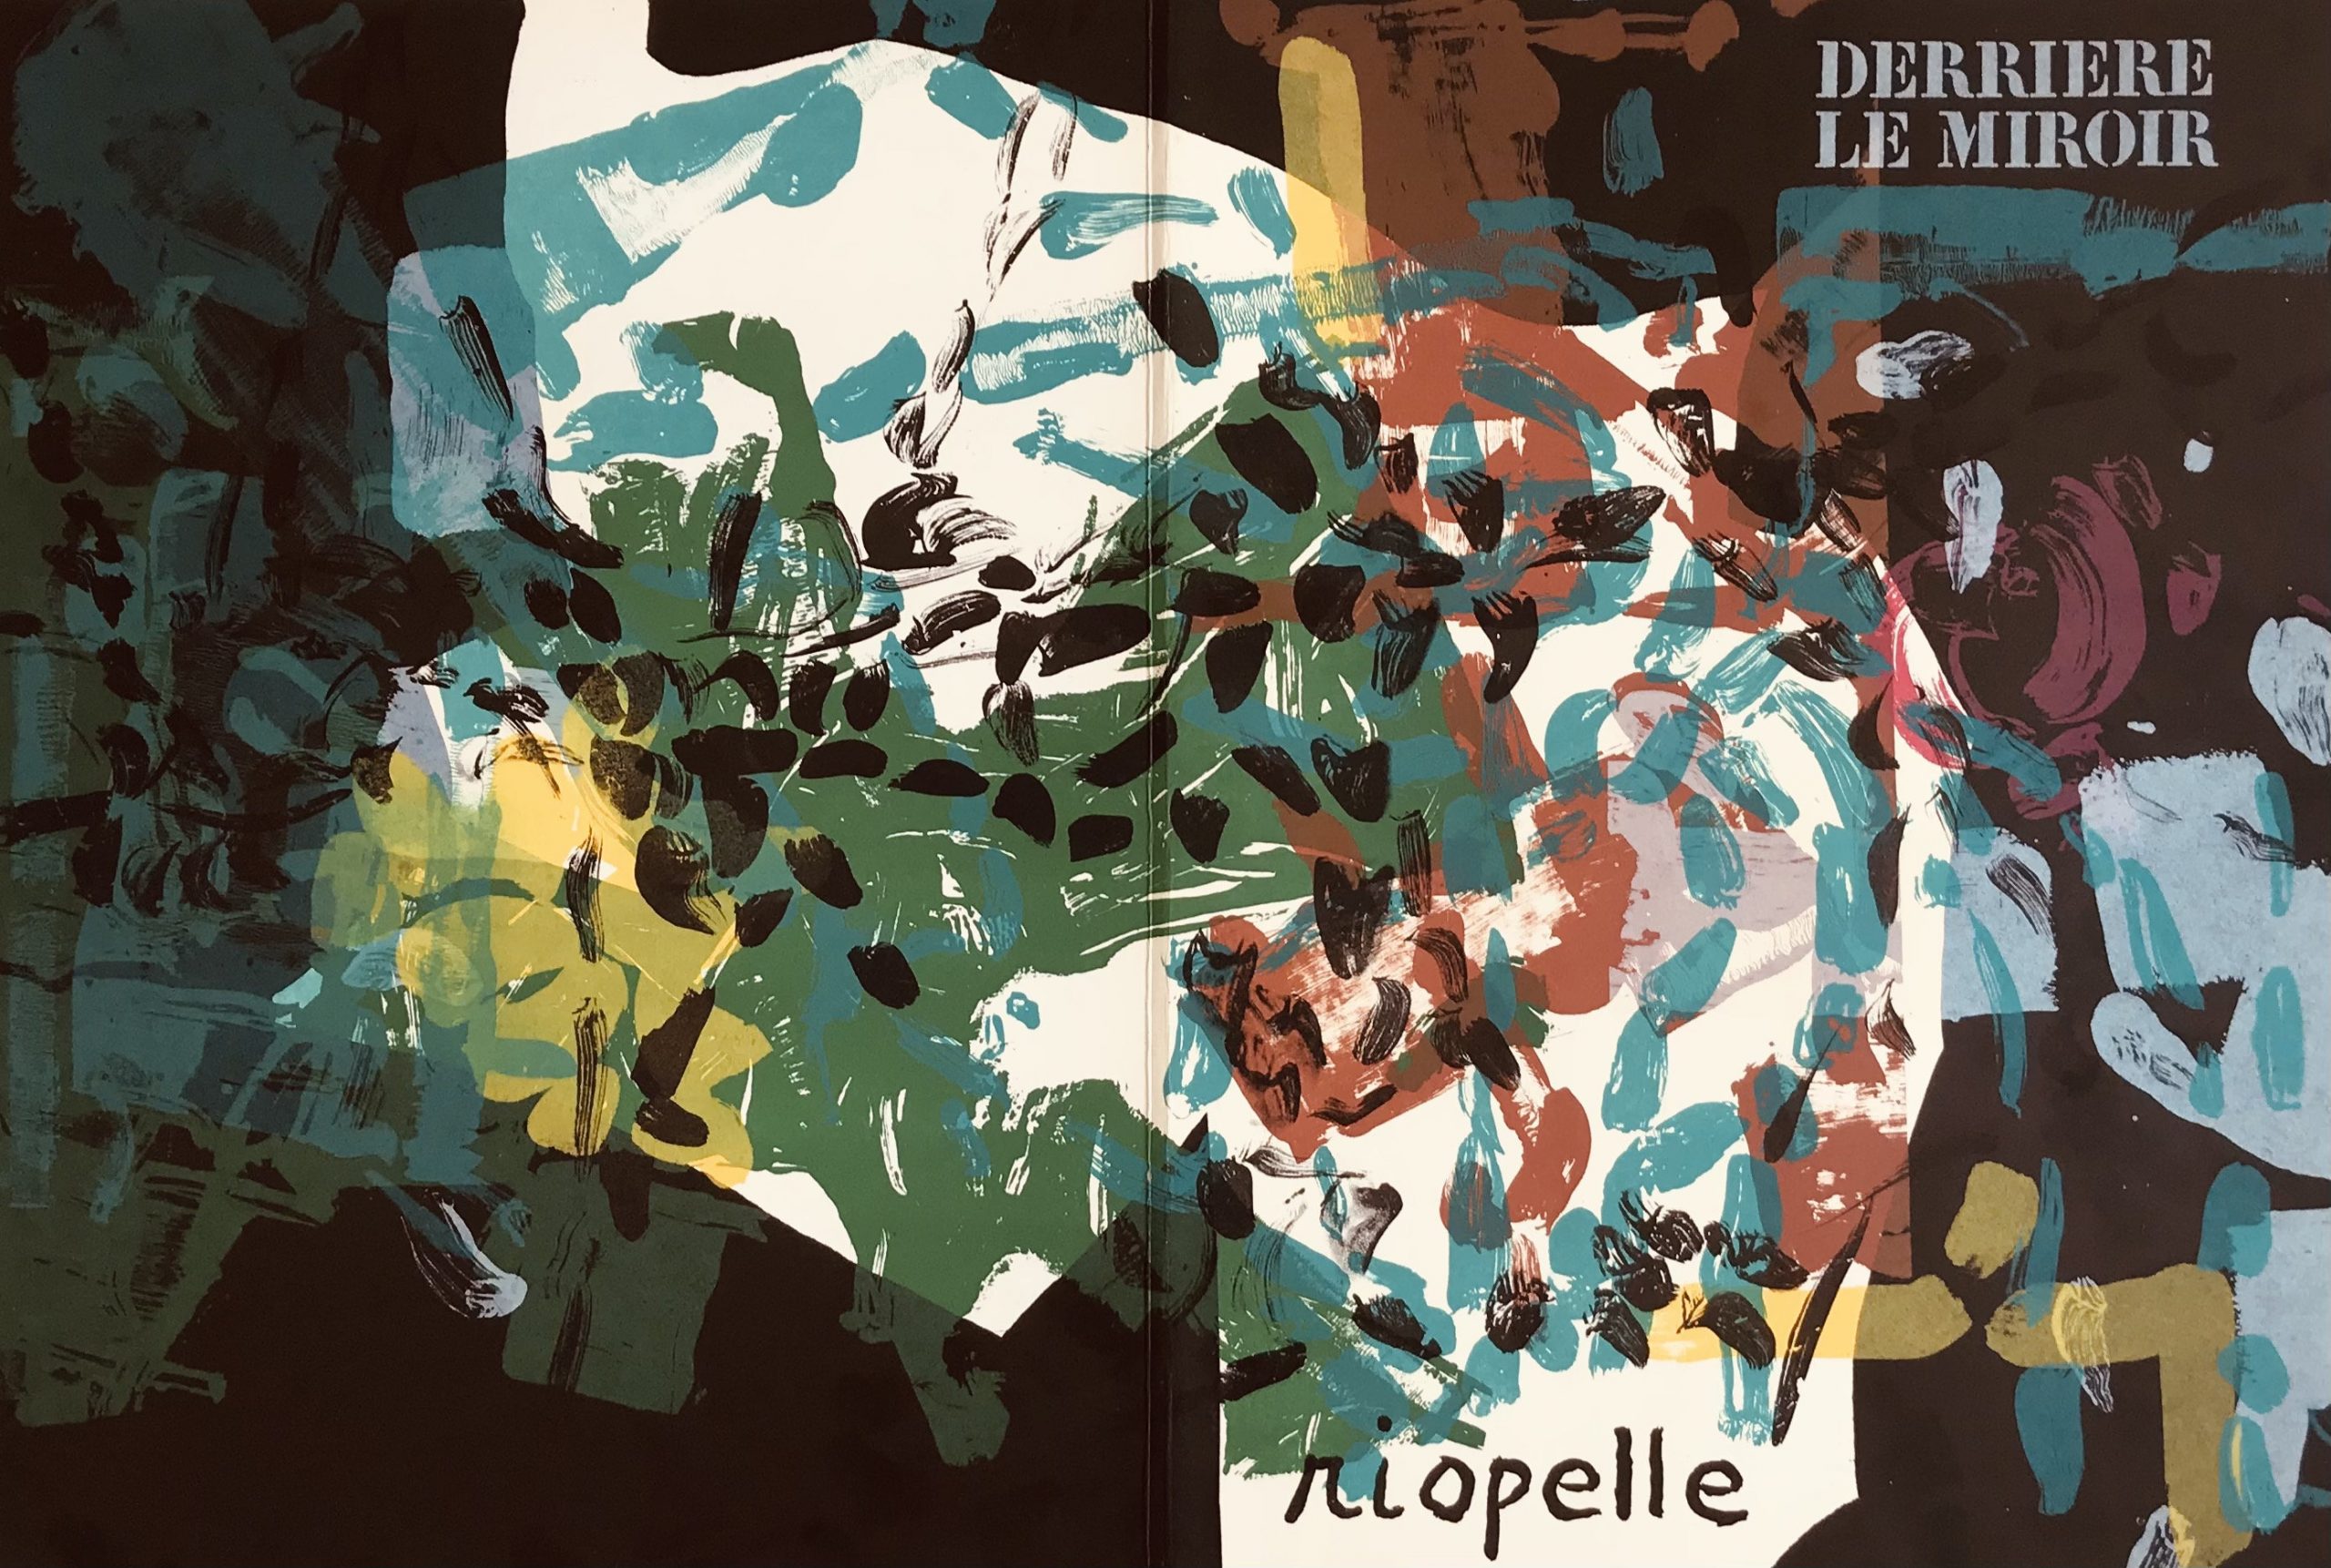 Riopelle, Original Lithograph, DM10171d, Derriere le Miroir 1968